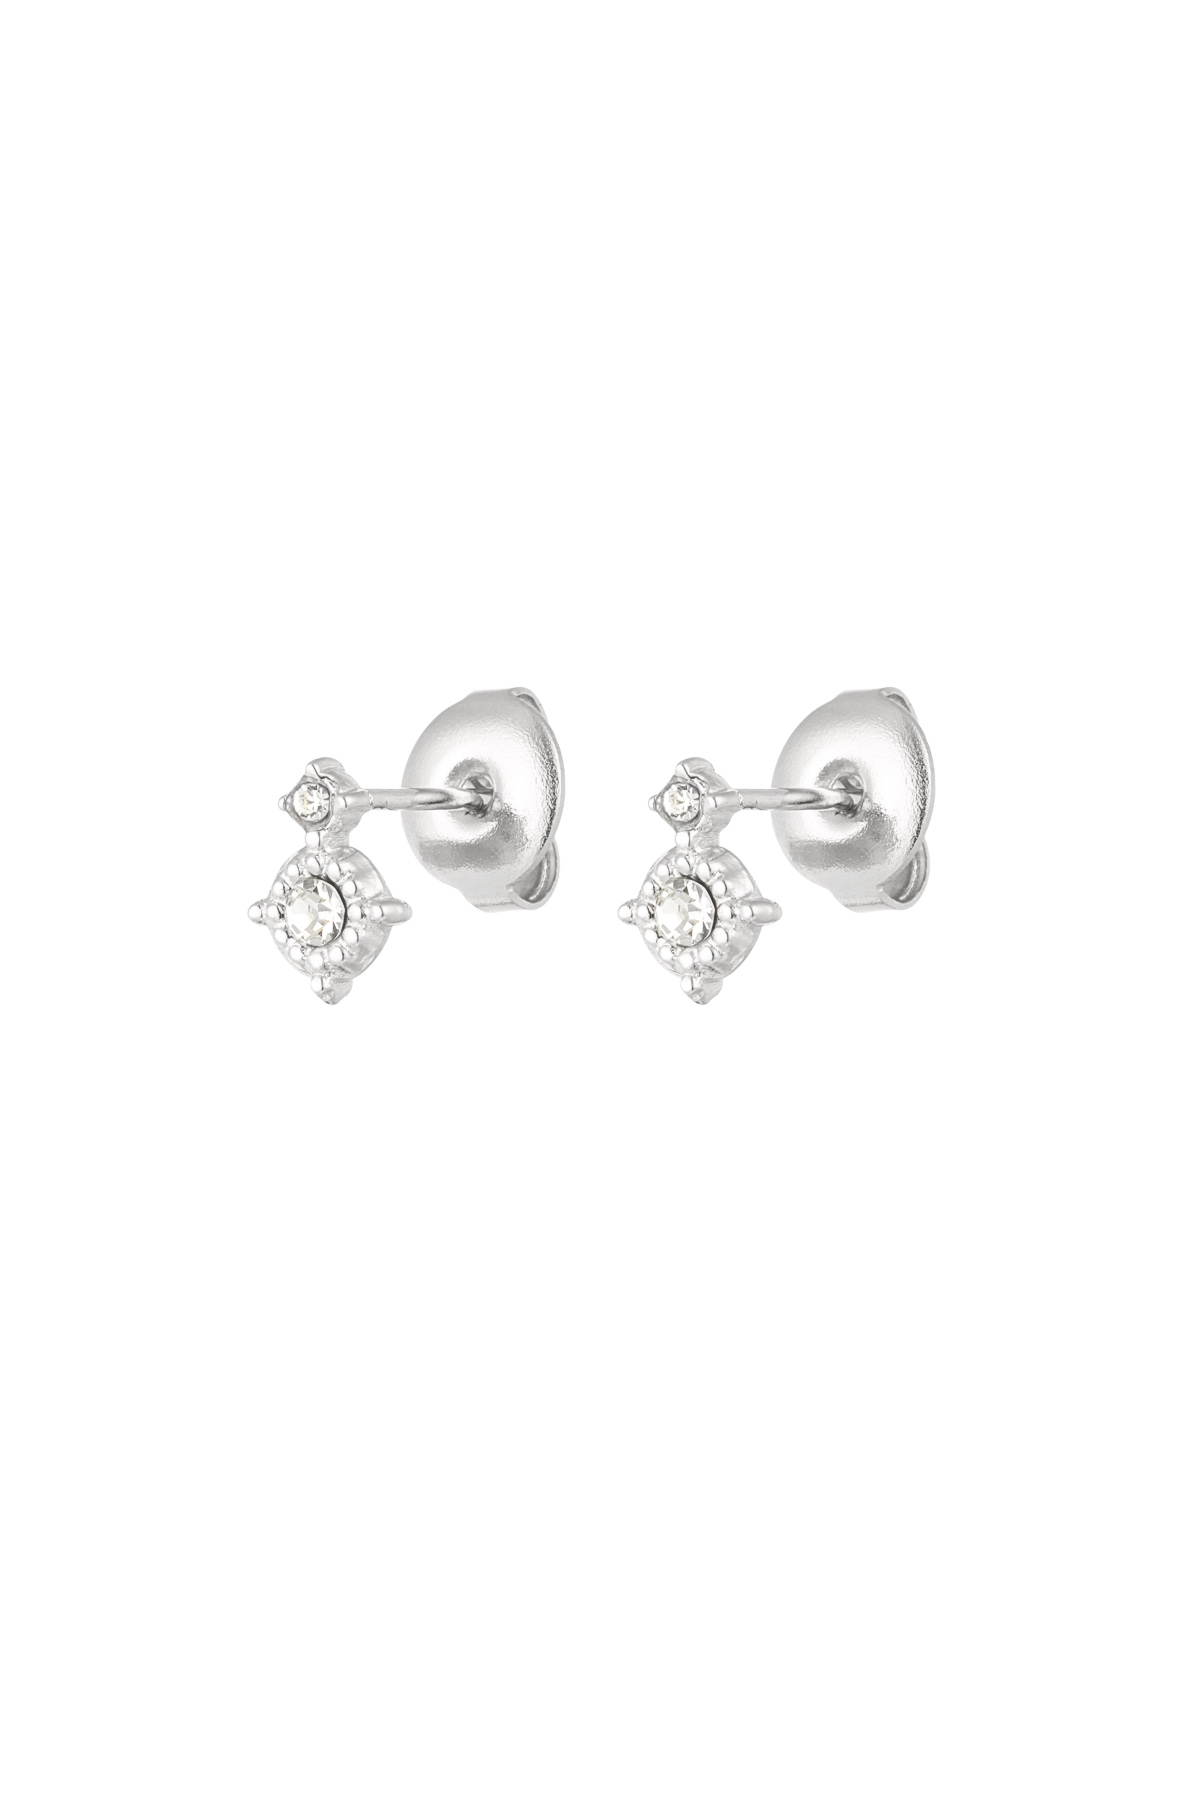 Schicker Ohrring mit doppelten Strasssteinen – Silber